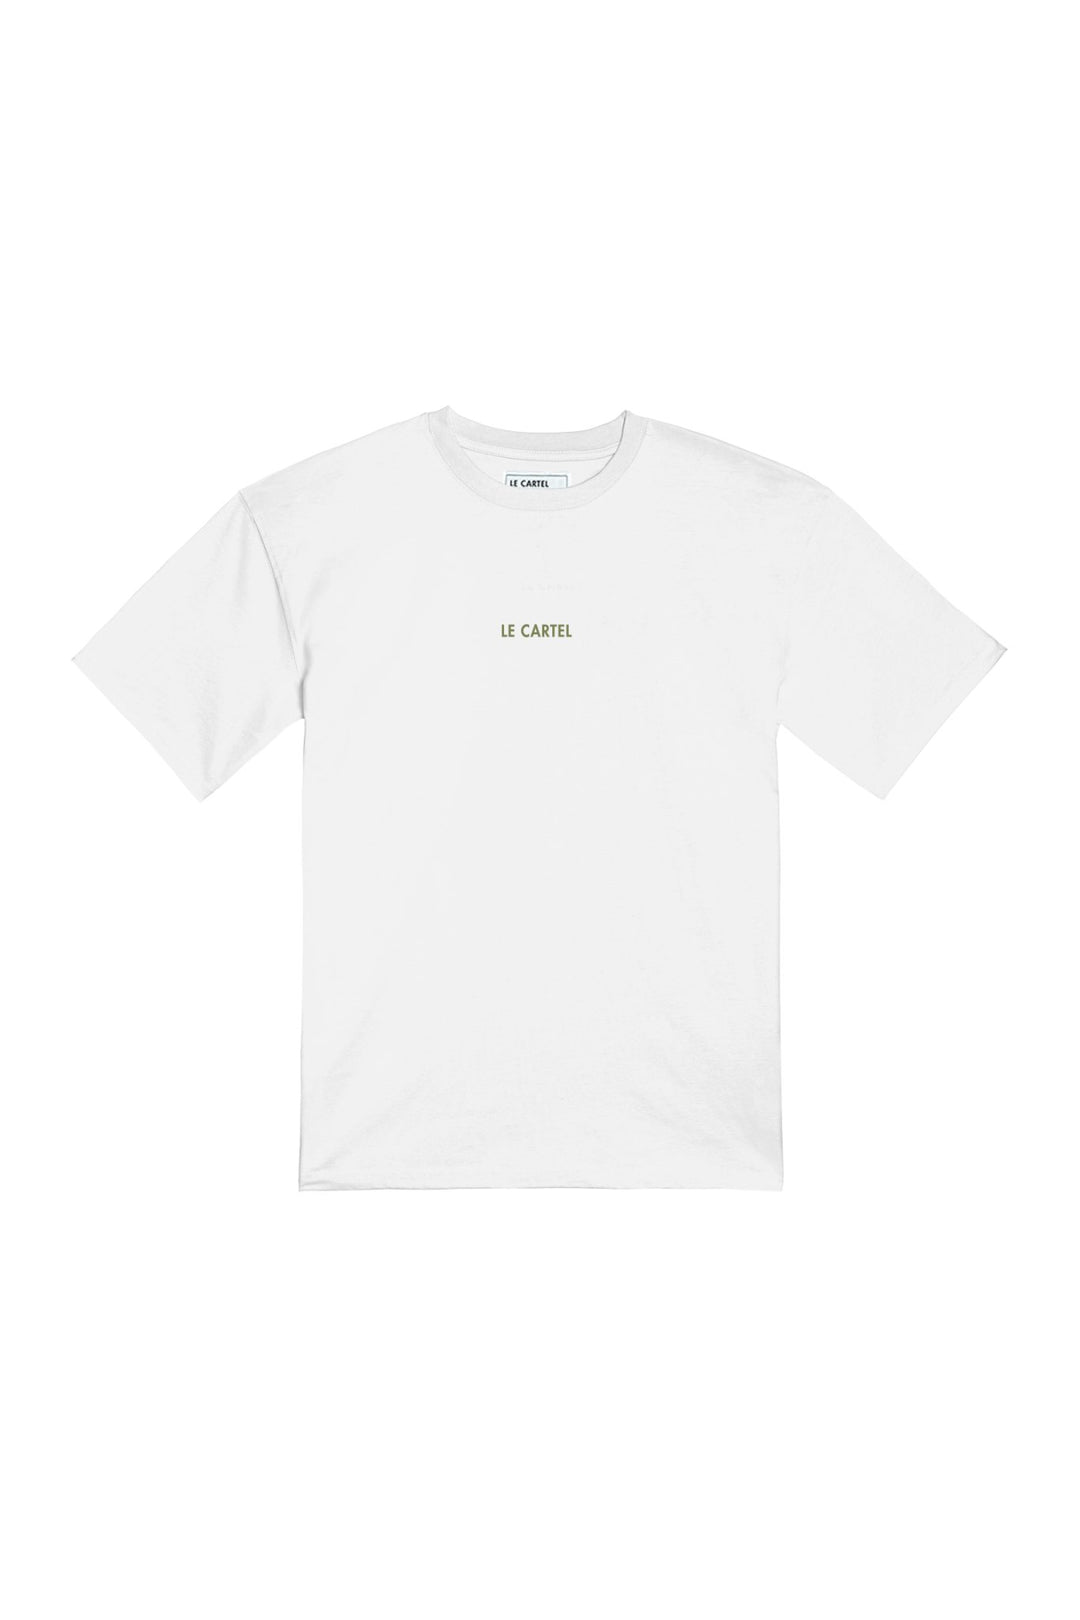 BLAZED・T - shirt unisexe・Blanc - Le Cartel